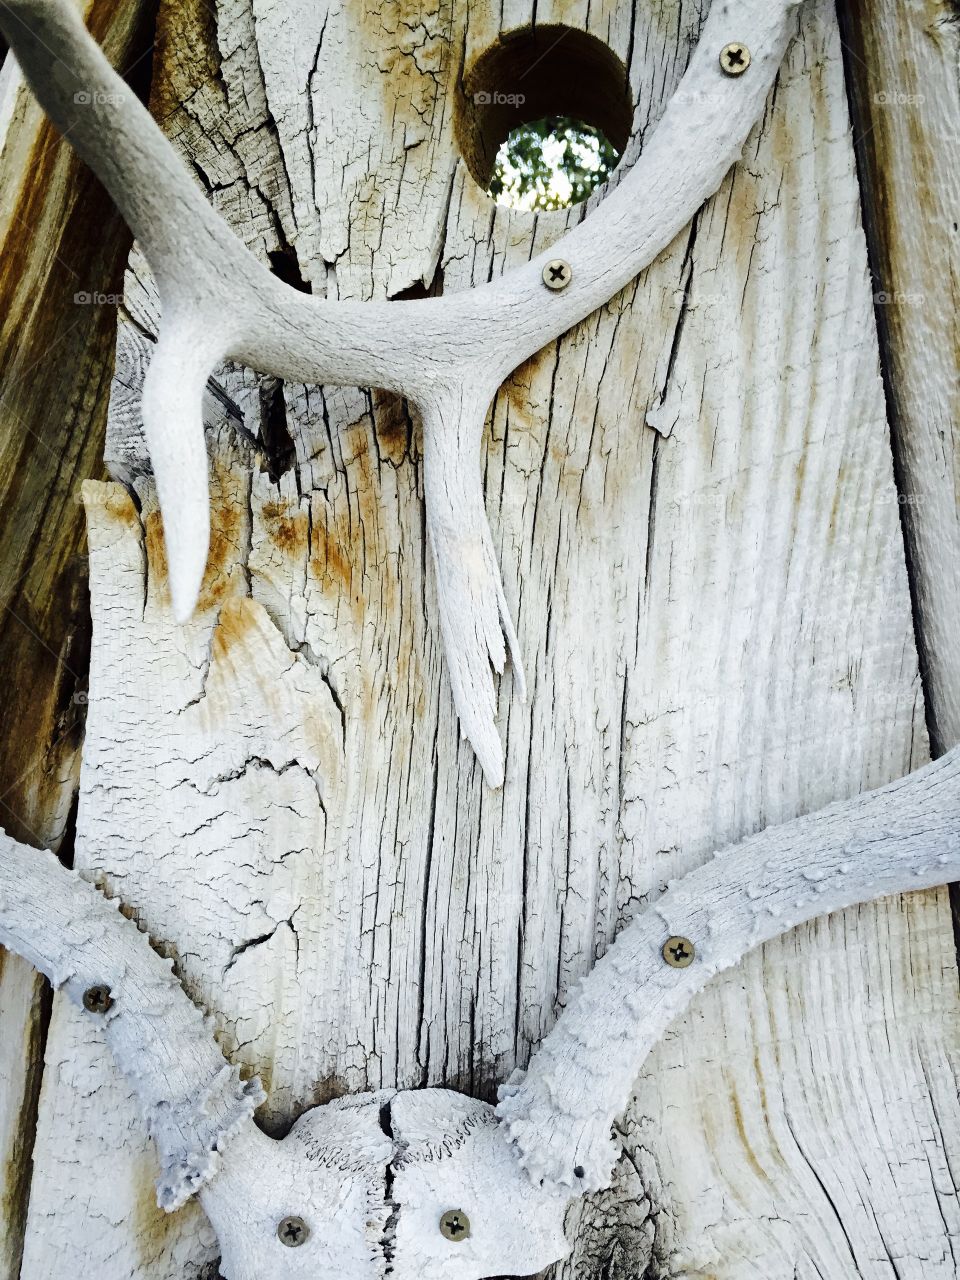 Rustic Antler on Wood. And old deer antler displayed on weathered wood